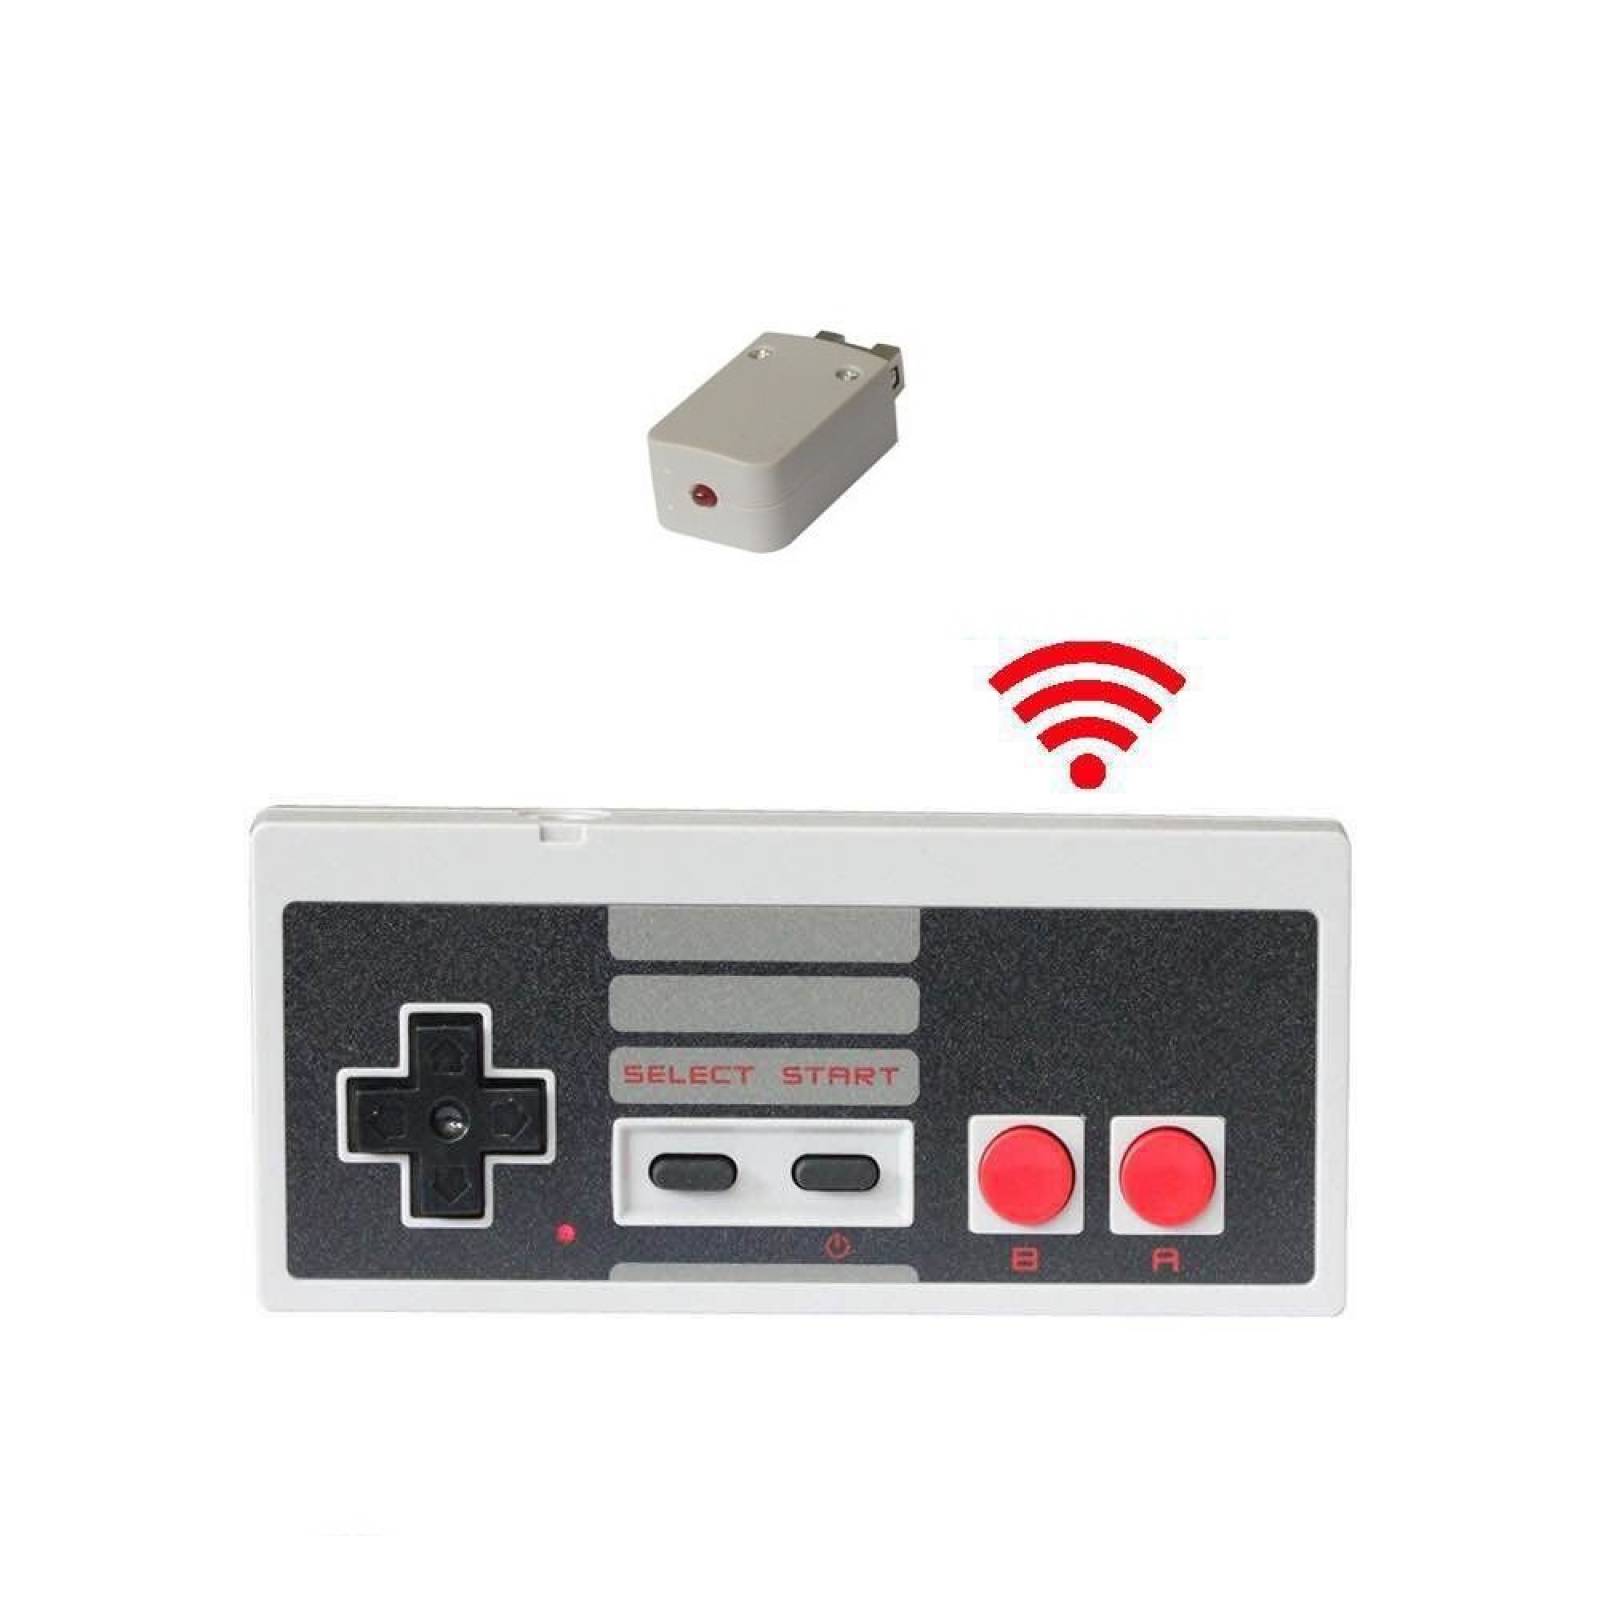 Controlador inalámbrico HonWally edición clásicos NES constr